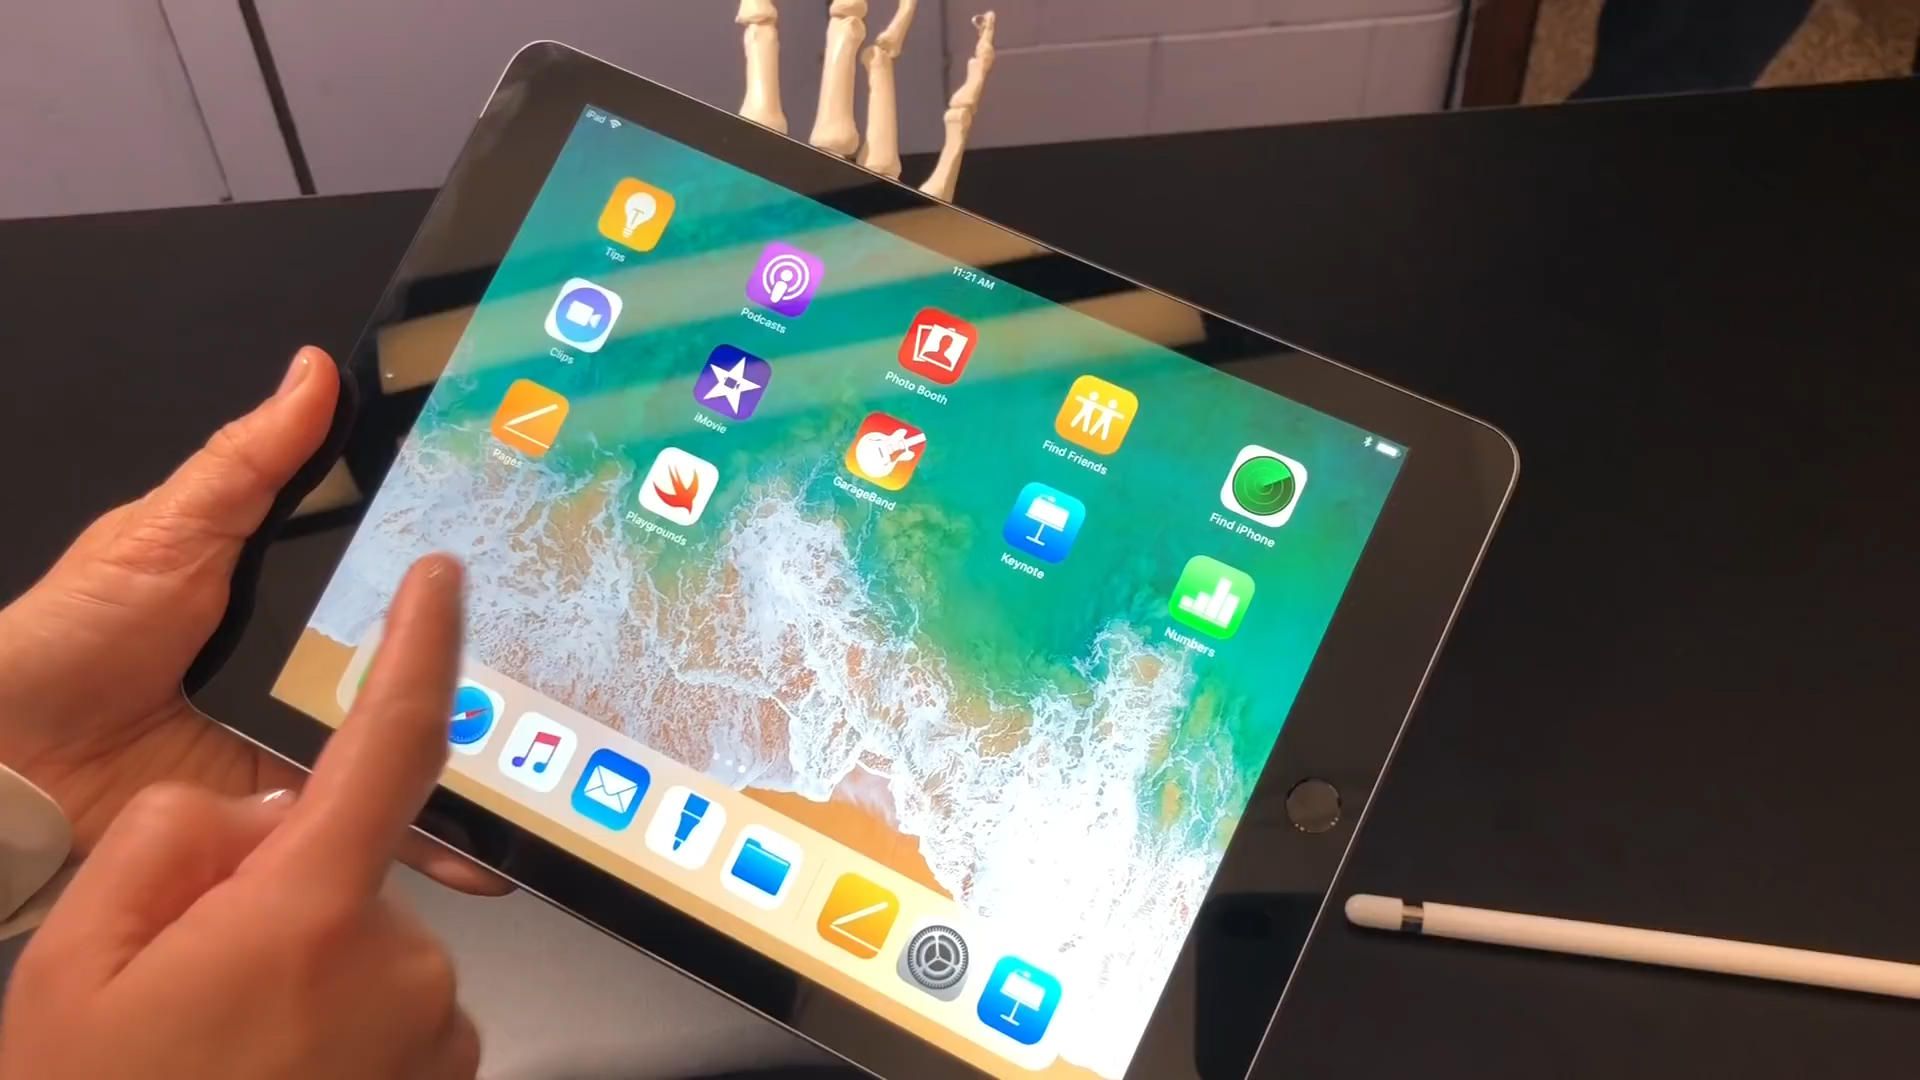 Tất tần tật những thông tin bạn cần biết về iPad 2018 (iPad Gen 6)